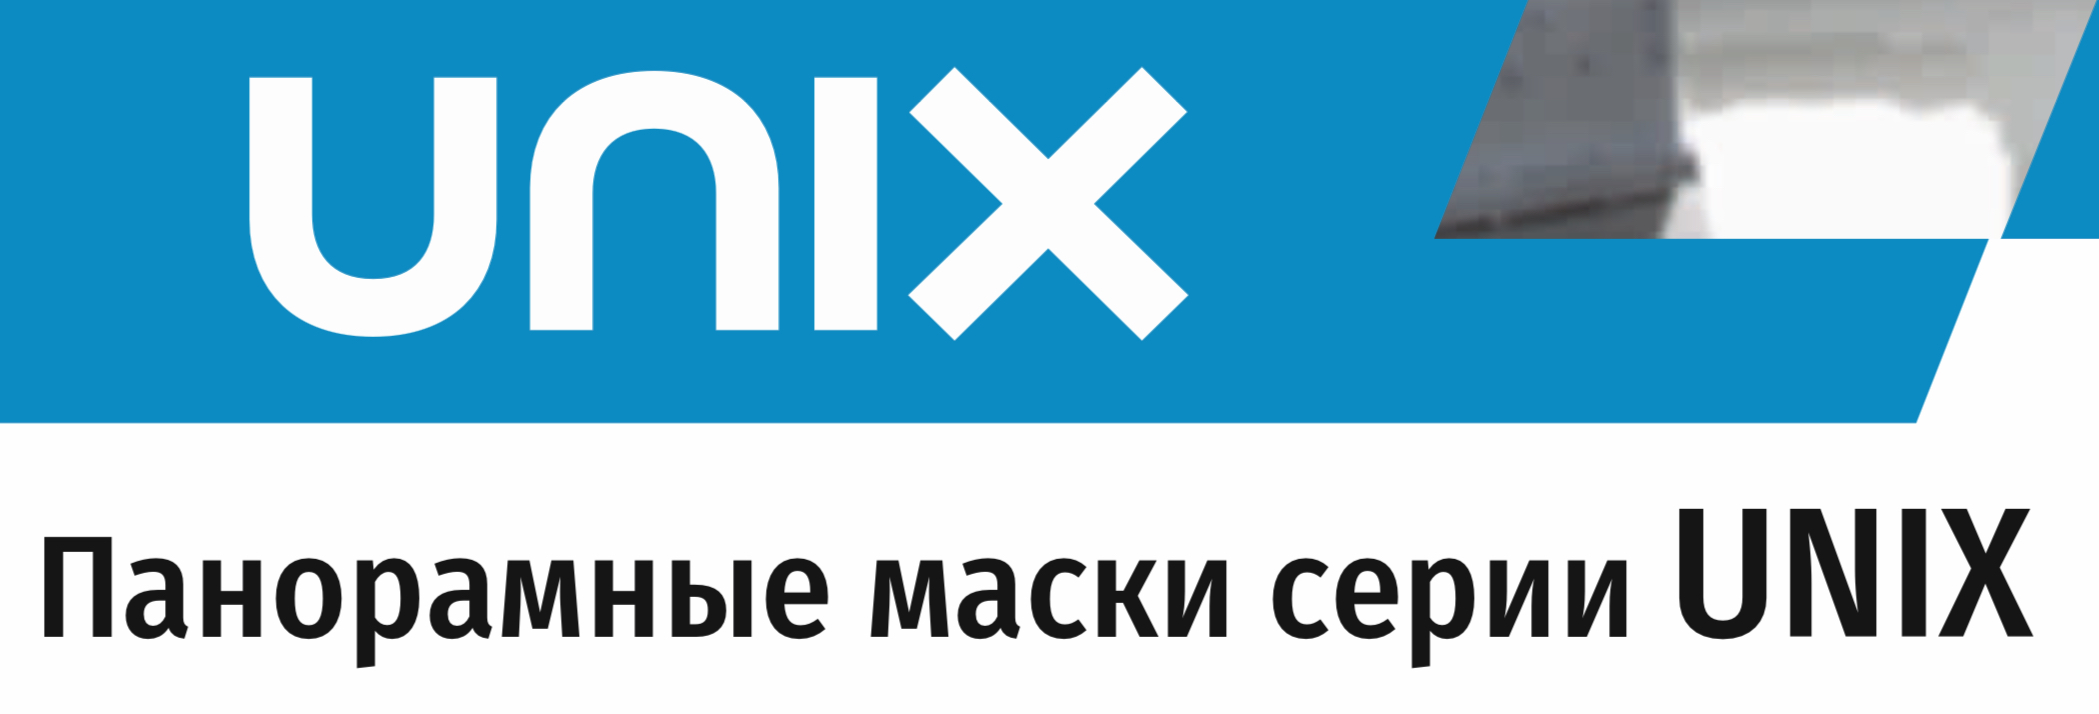 Маски и фильтры Уникс (Unix)